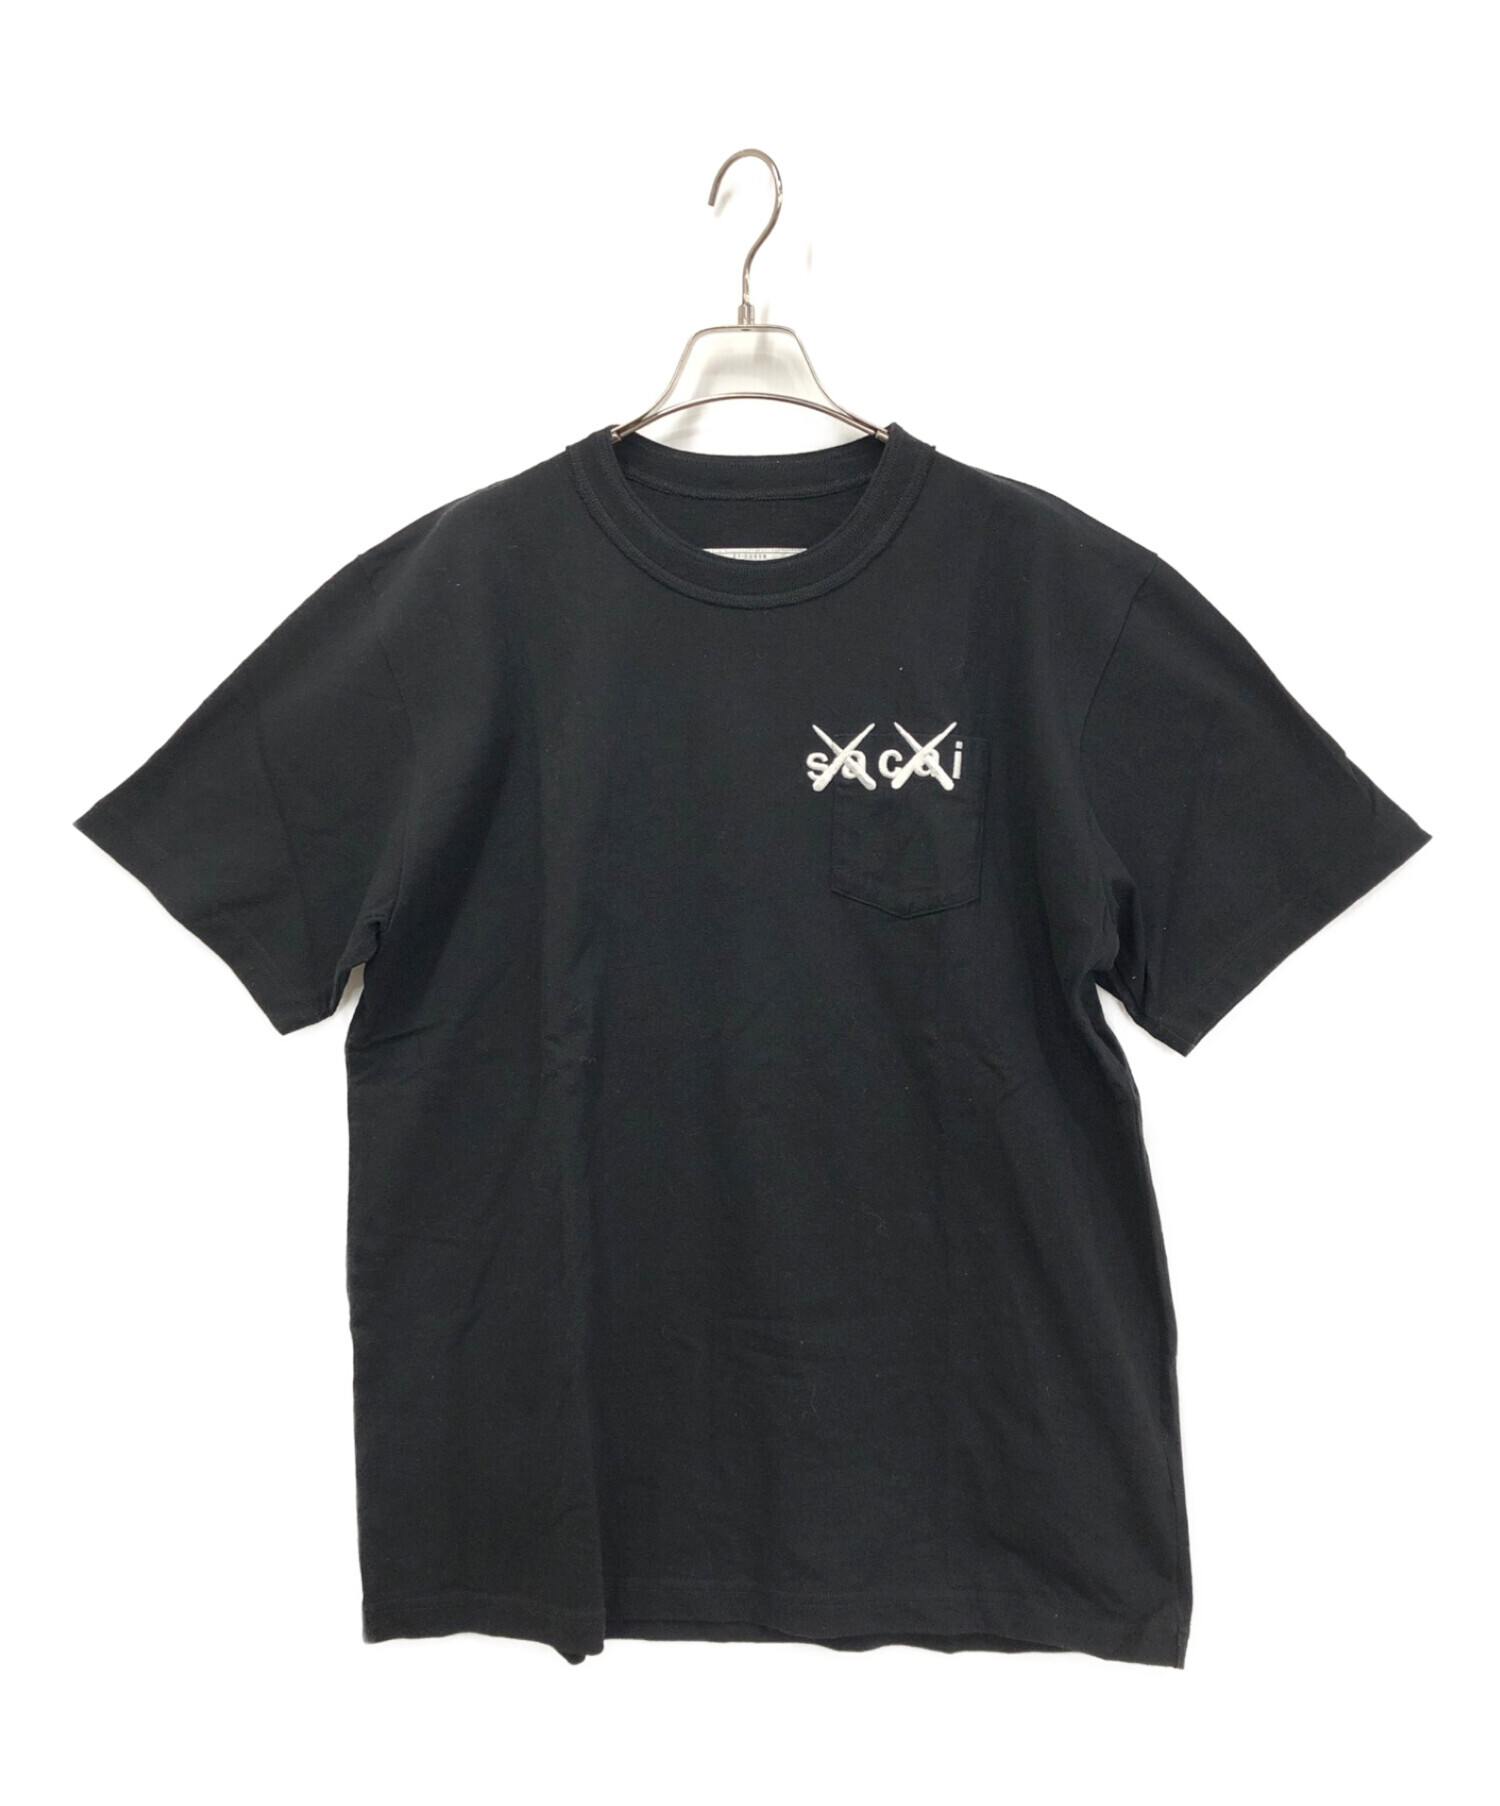 sacai (サカイ) KAWS (カウズ) Tシャツ ブラック サイズ:4